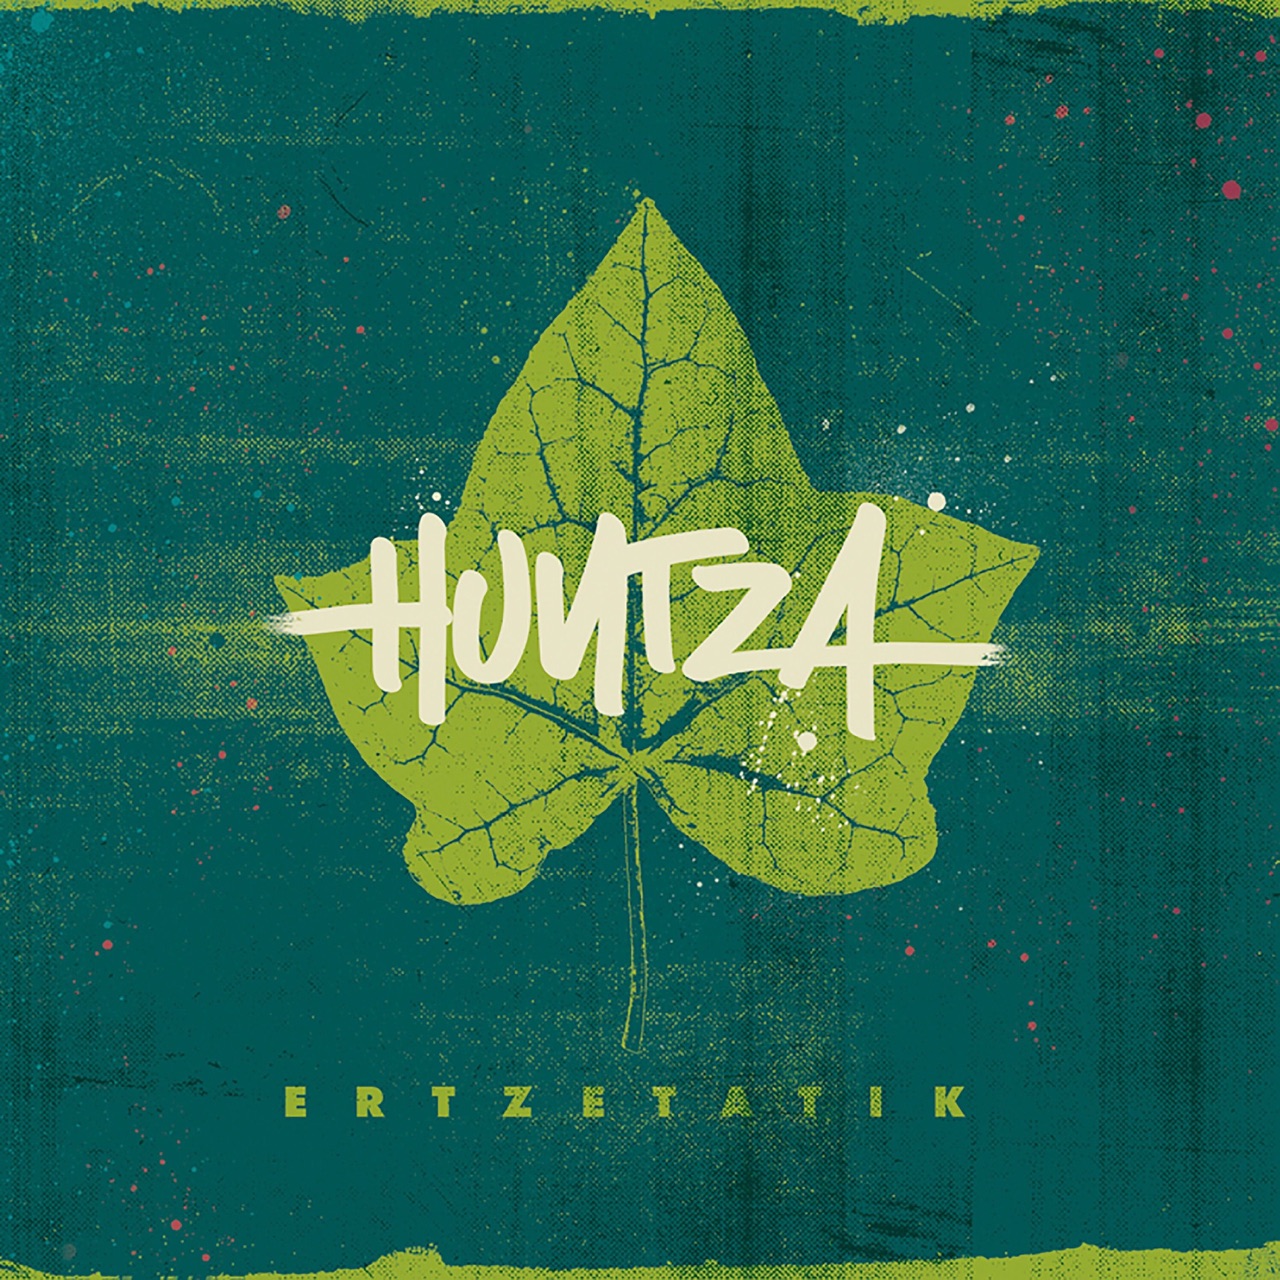 Huntza Ertzetatik cover artwork